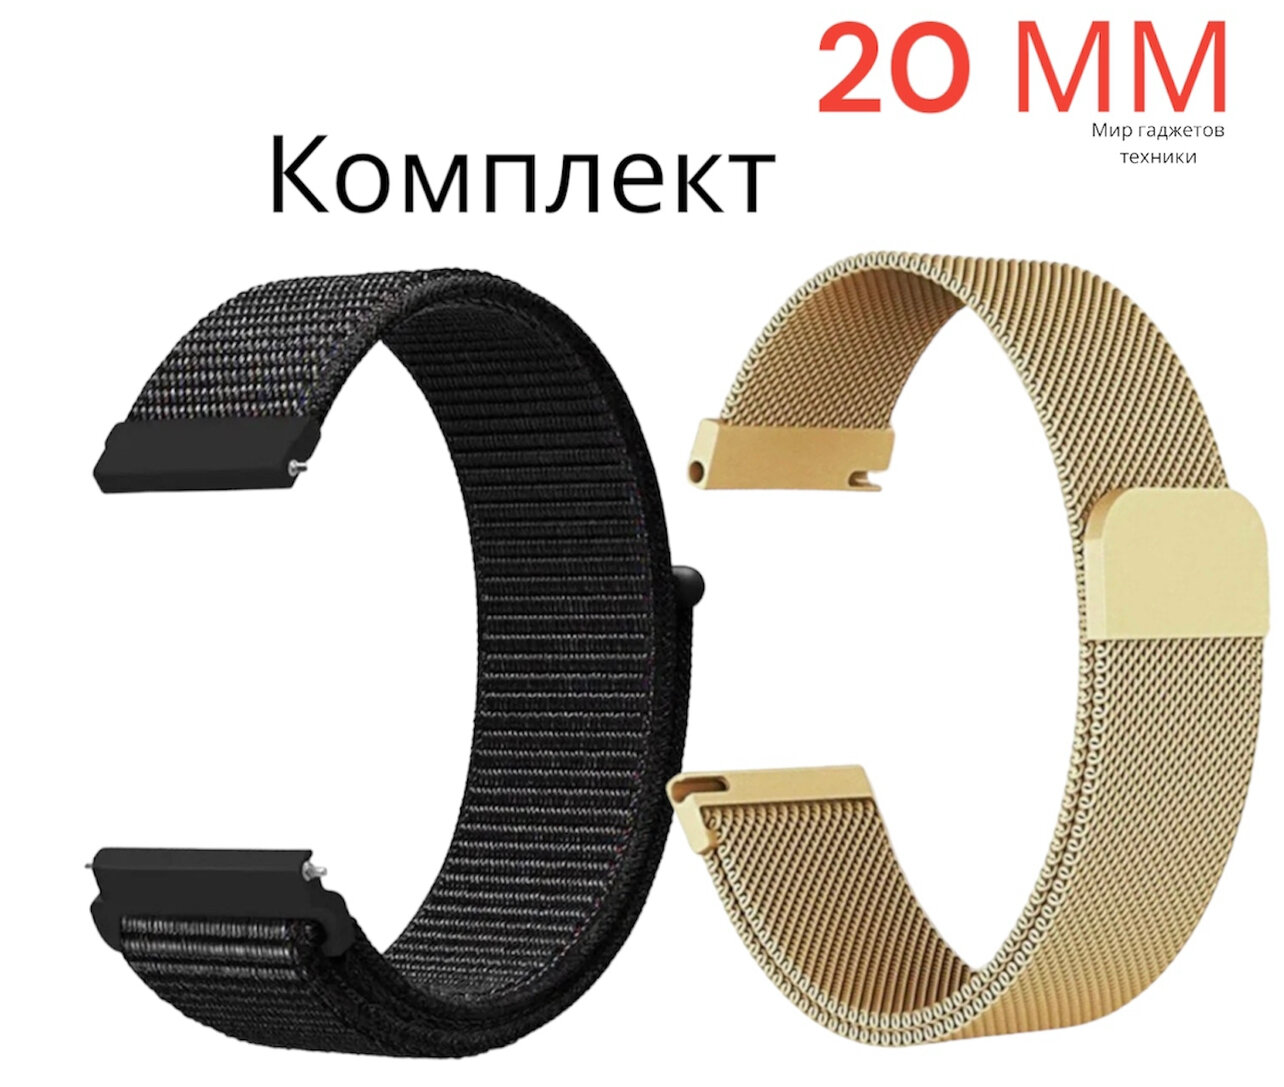 Ремешок миланская петля, шириной 20 мм/ Универсальный нейлоновый ремешок для смарт-часов Xiaomi, Amazfit, Huawei, Samsung Galaxy Watch, Garmin 20 мм